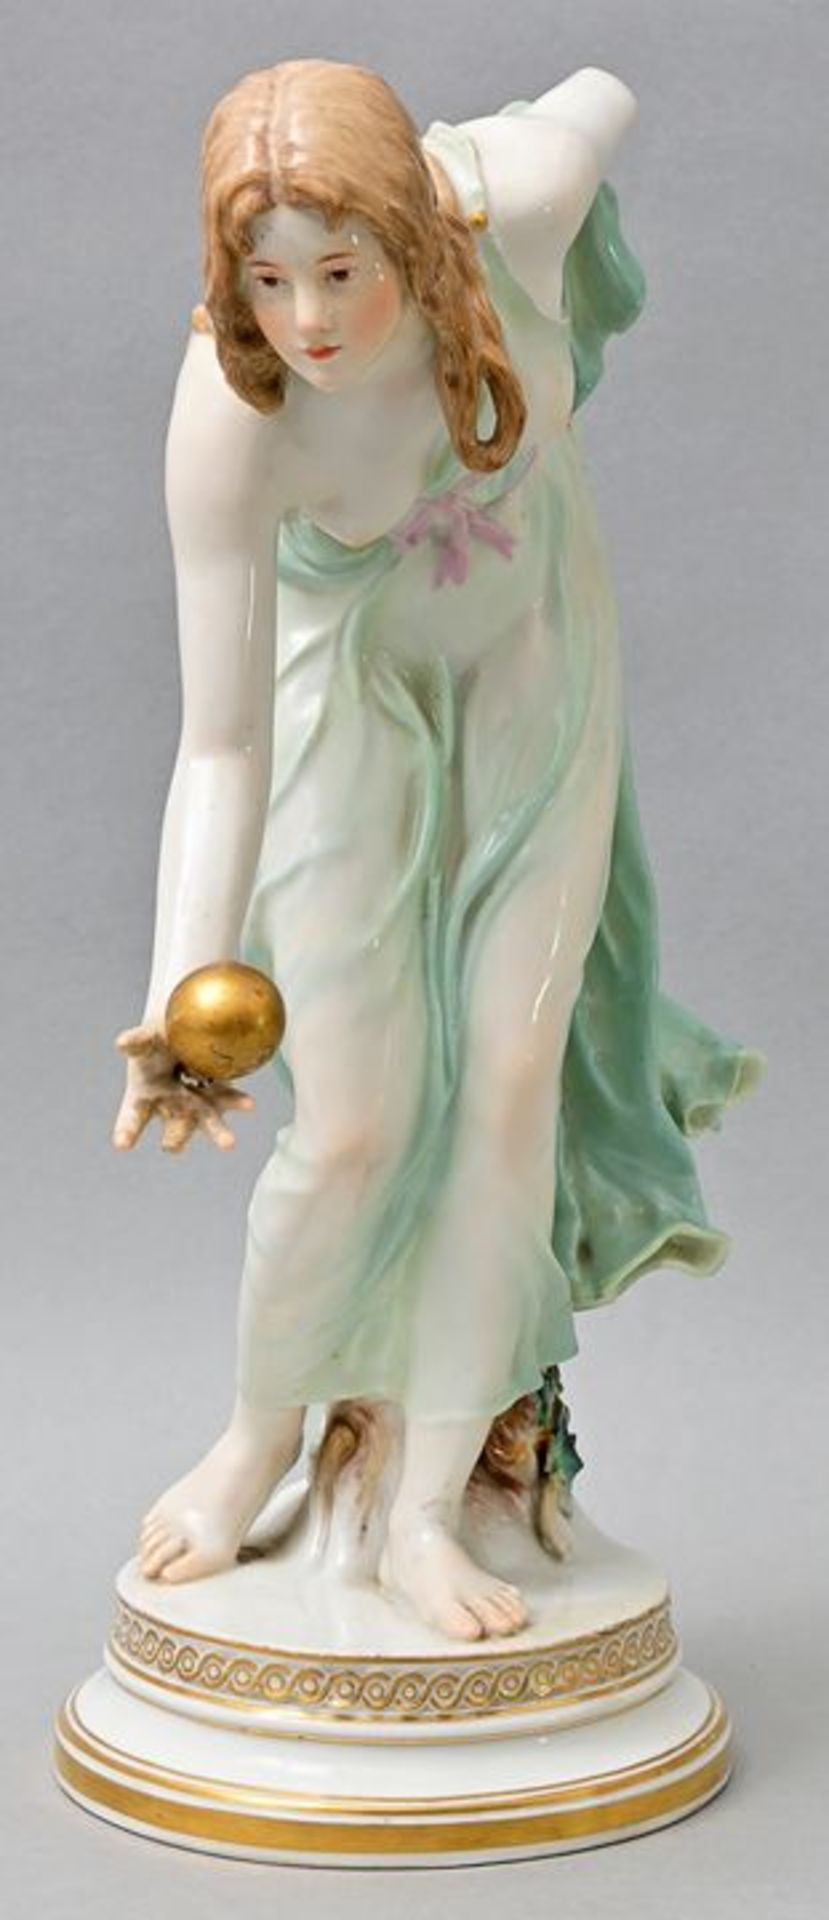 Porzellanfigur "Kugelspielerin", Meissen / porcelain figure - Image 5 of 5